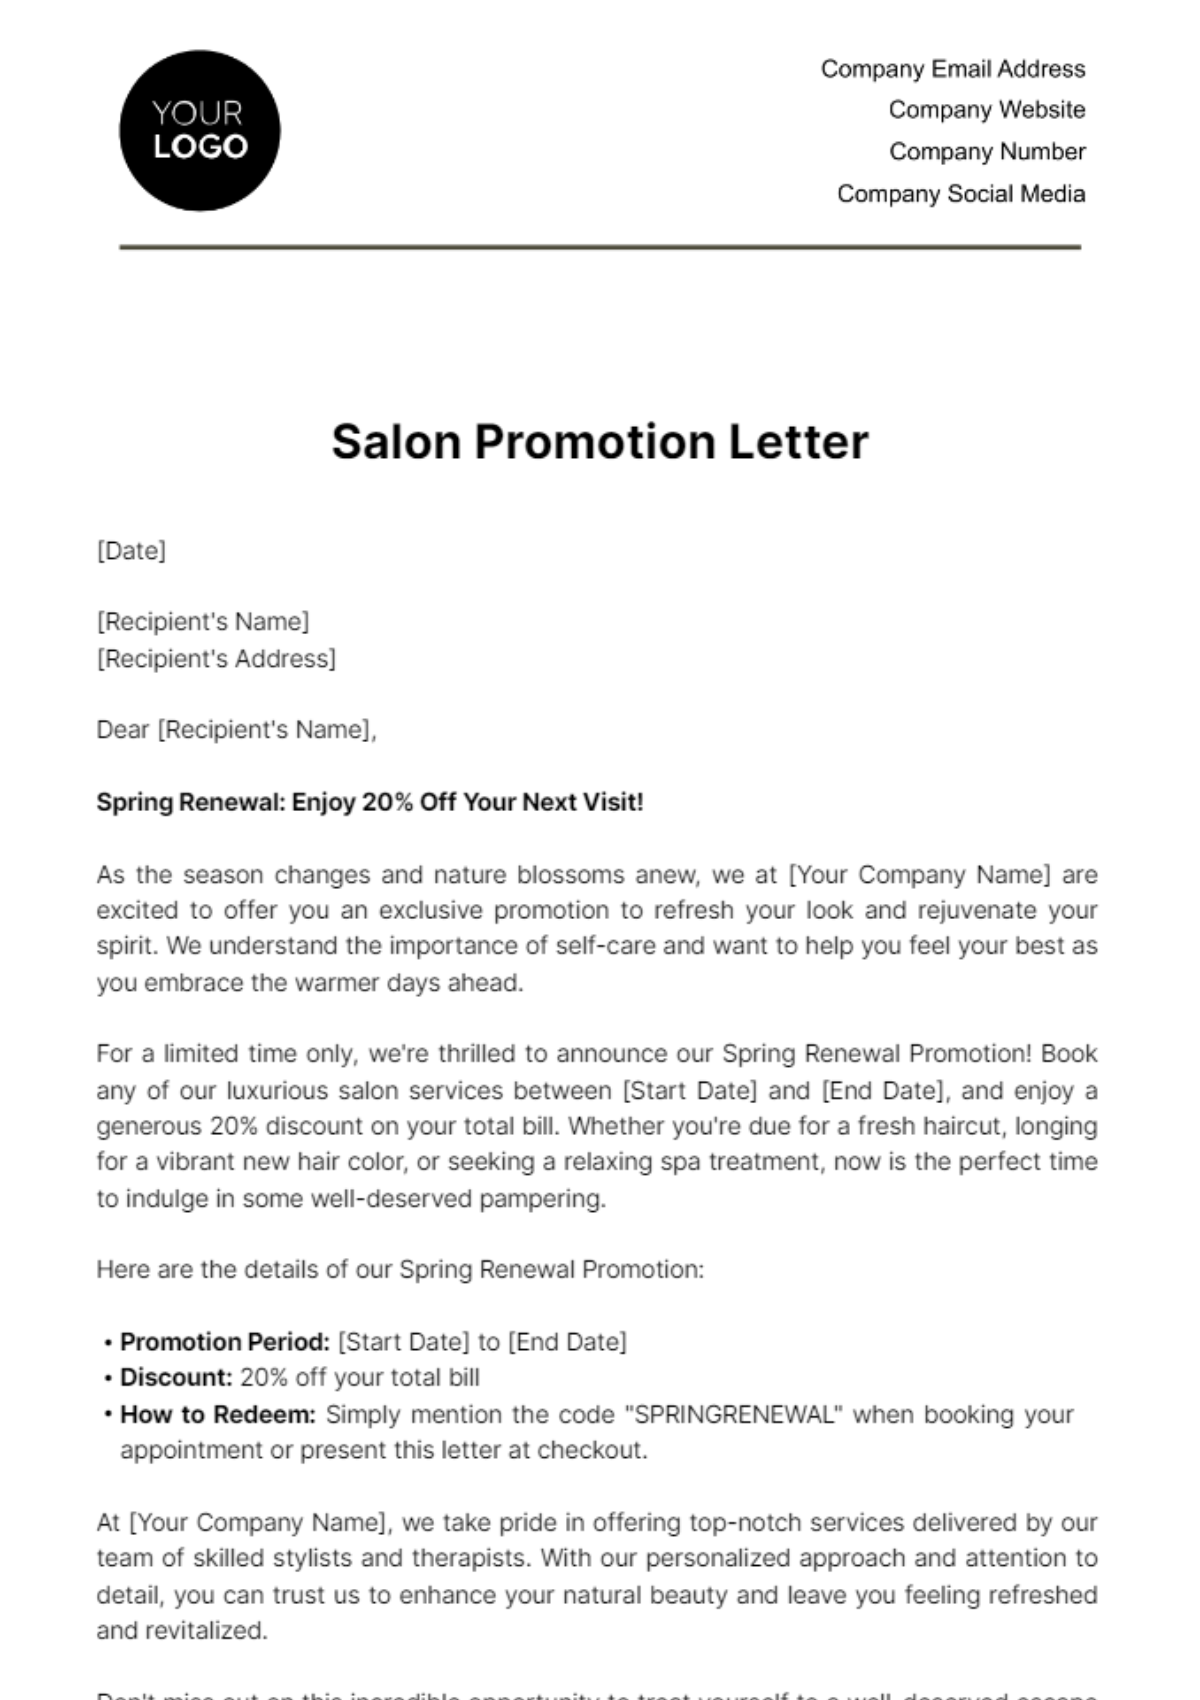 Salon Promotion Letter Template